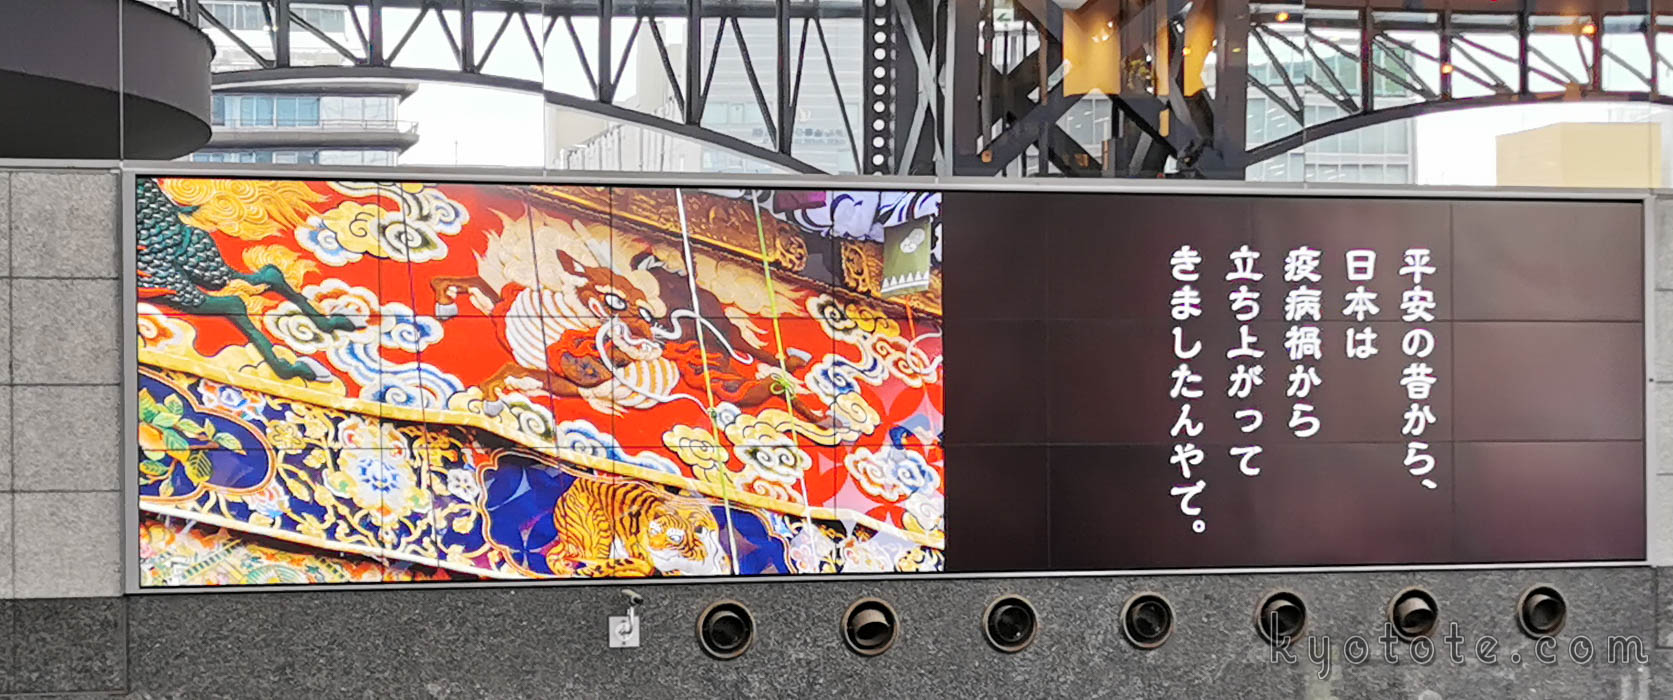 京都駅の大型サイネージで放映された祇園祭の映像